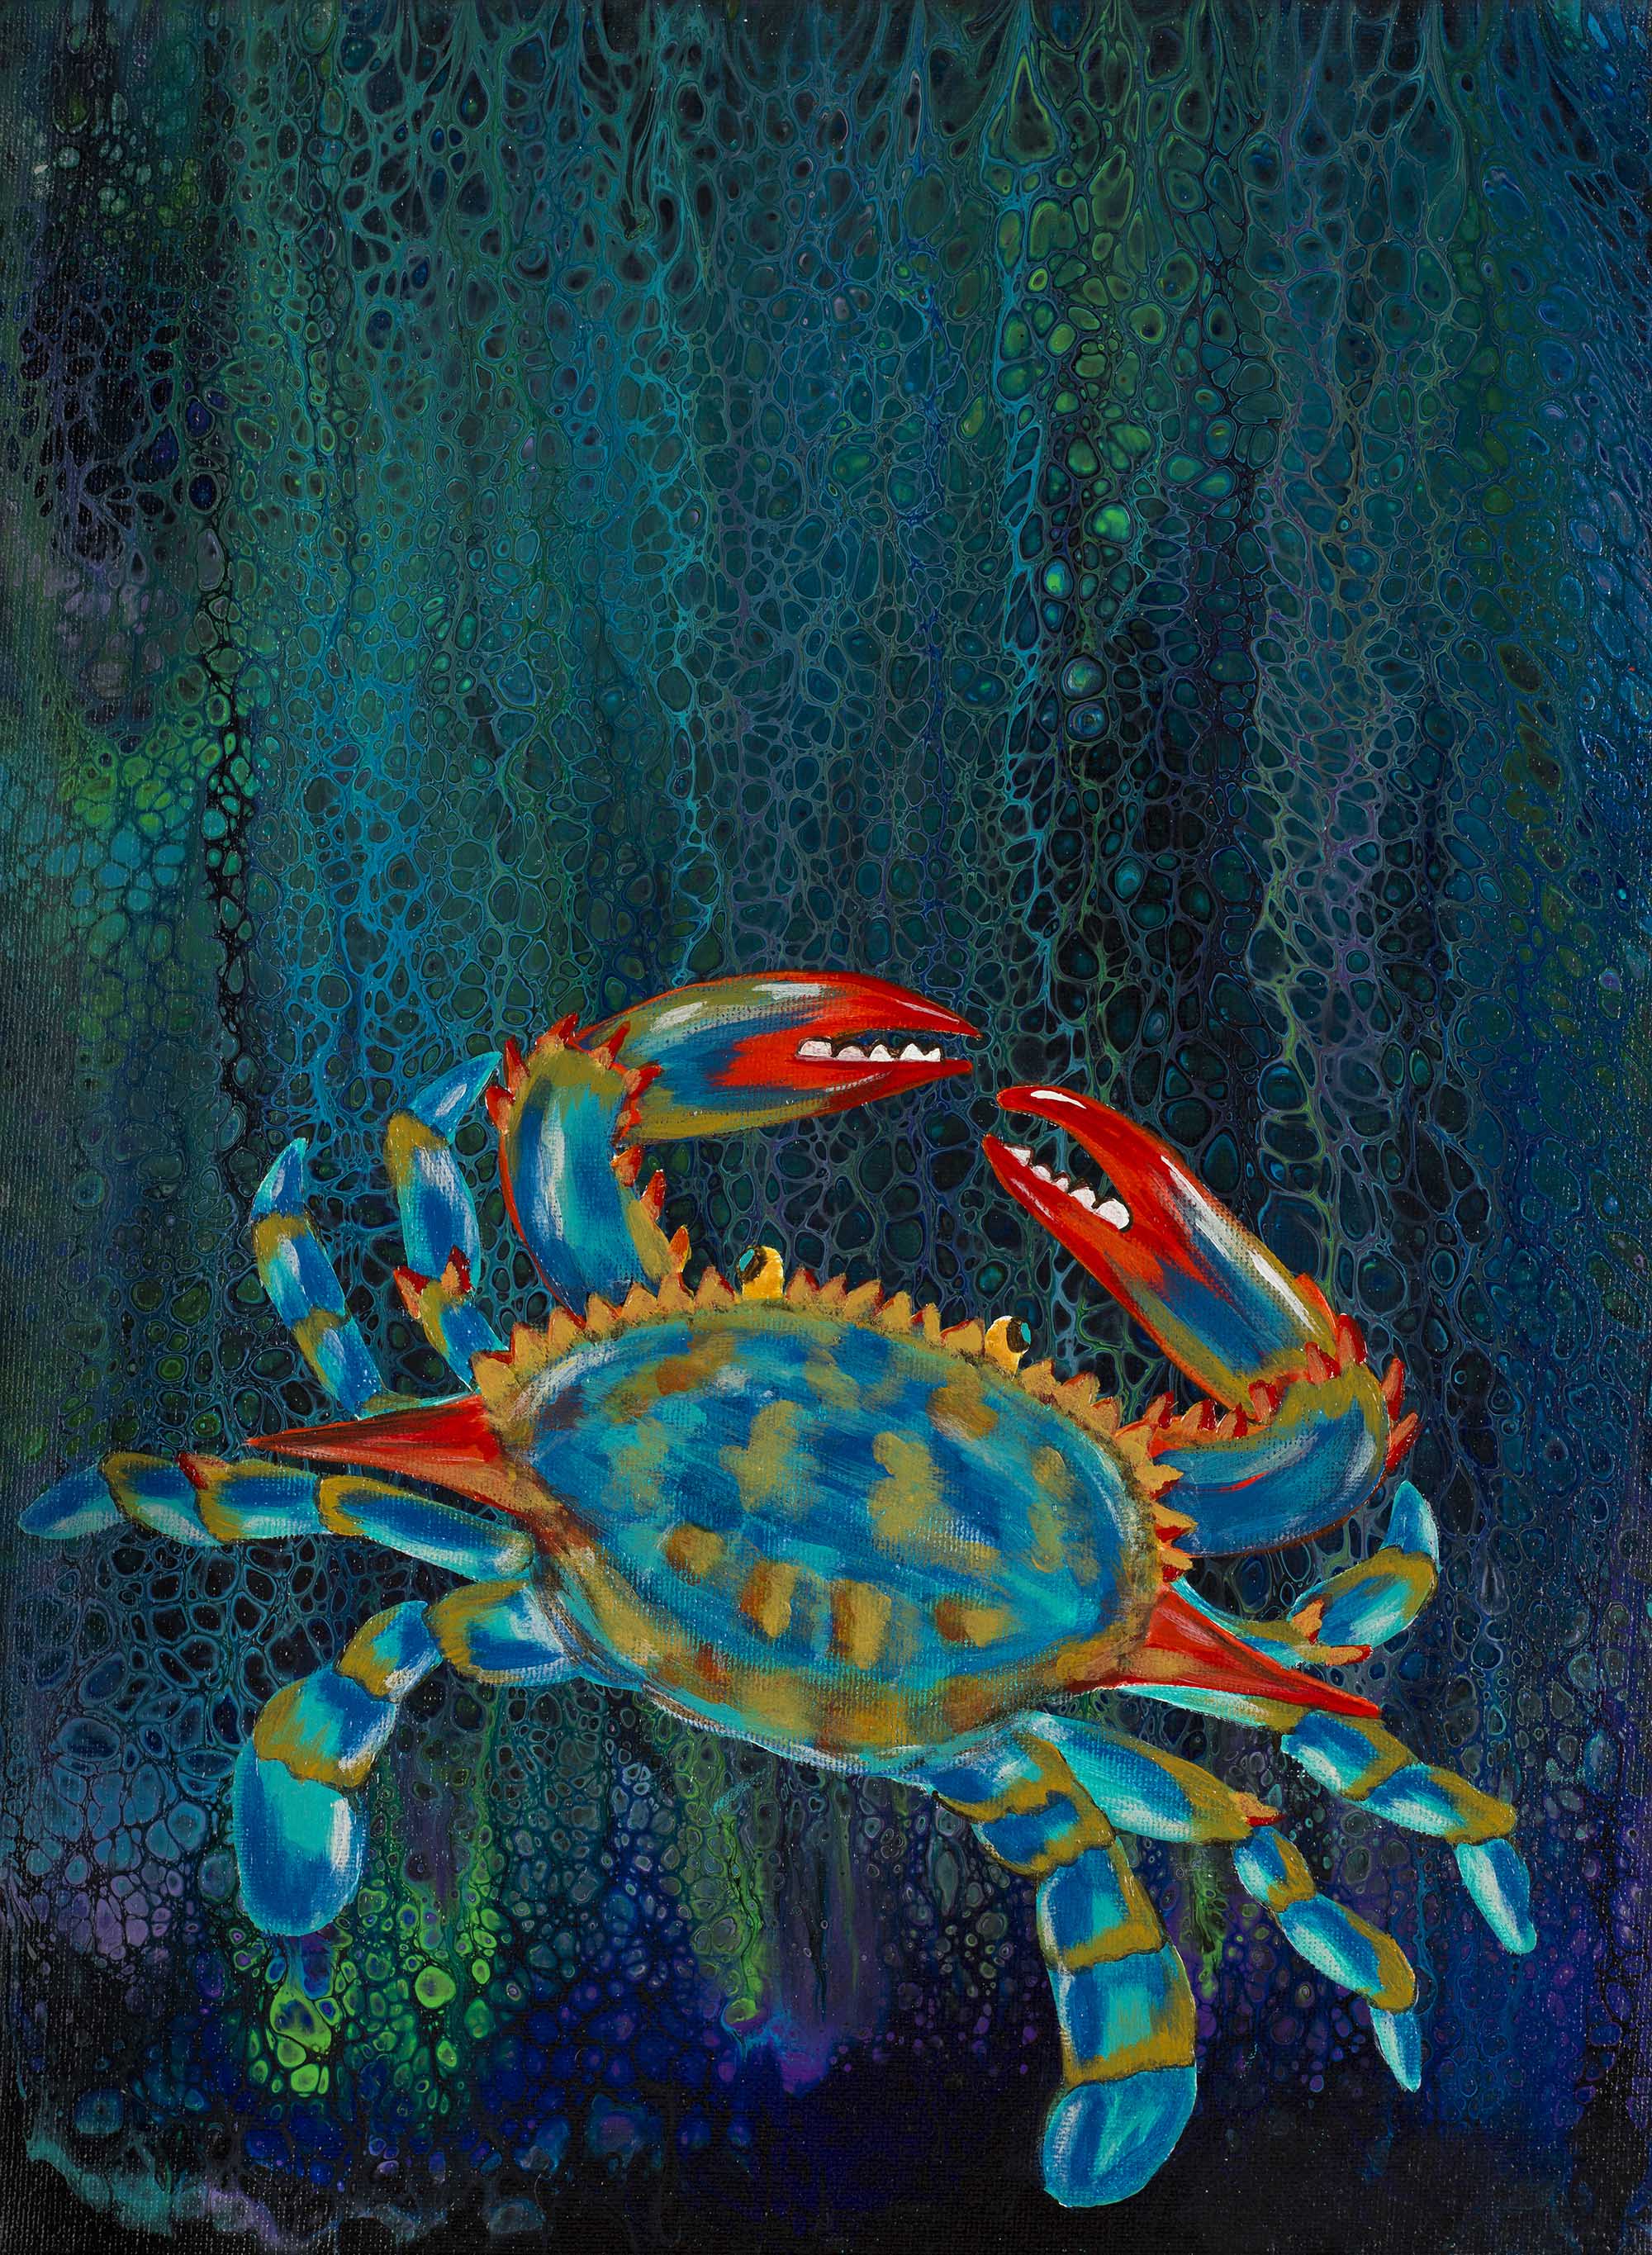 03. Blue Ocean Crab